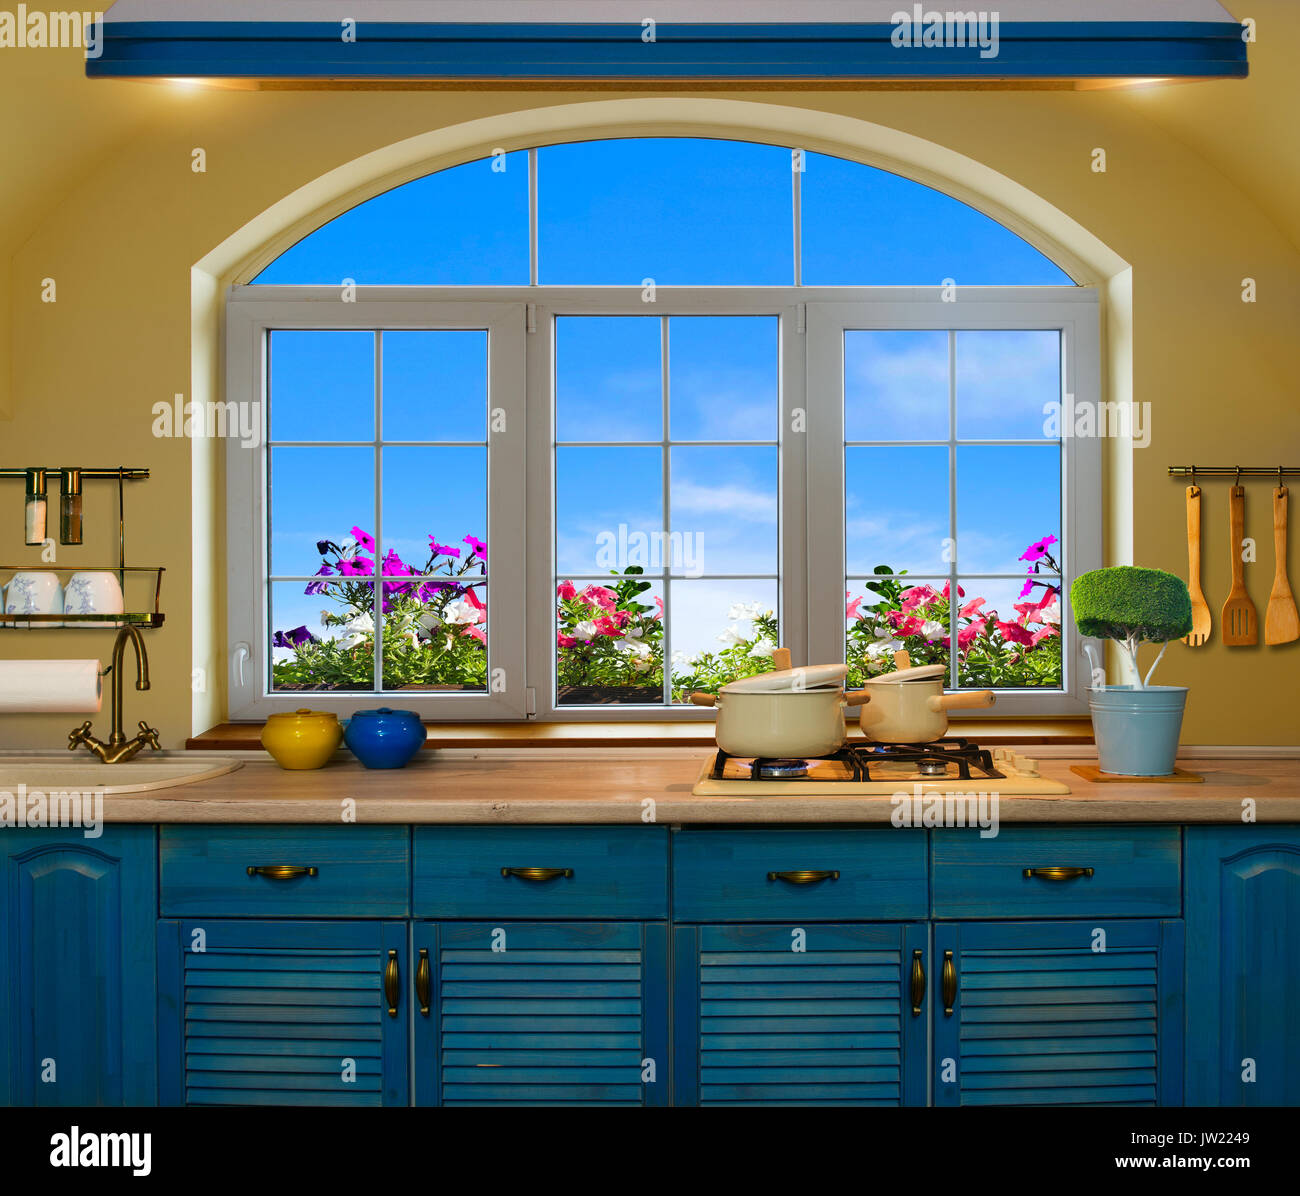 Innenraum blau Küche. Vorbereitung Mittagessen zu Hause auf dem Herd mit einem Blick aus dem Fenster auf die grünen Wiesen und Felder Stockfoto